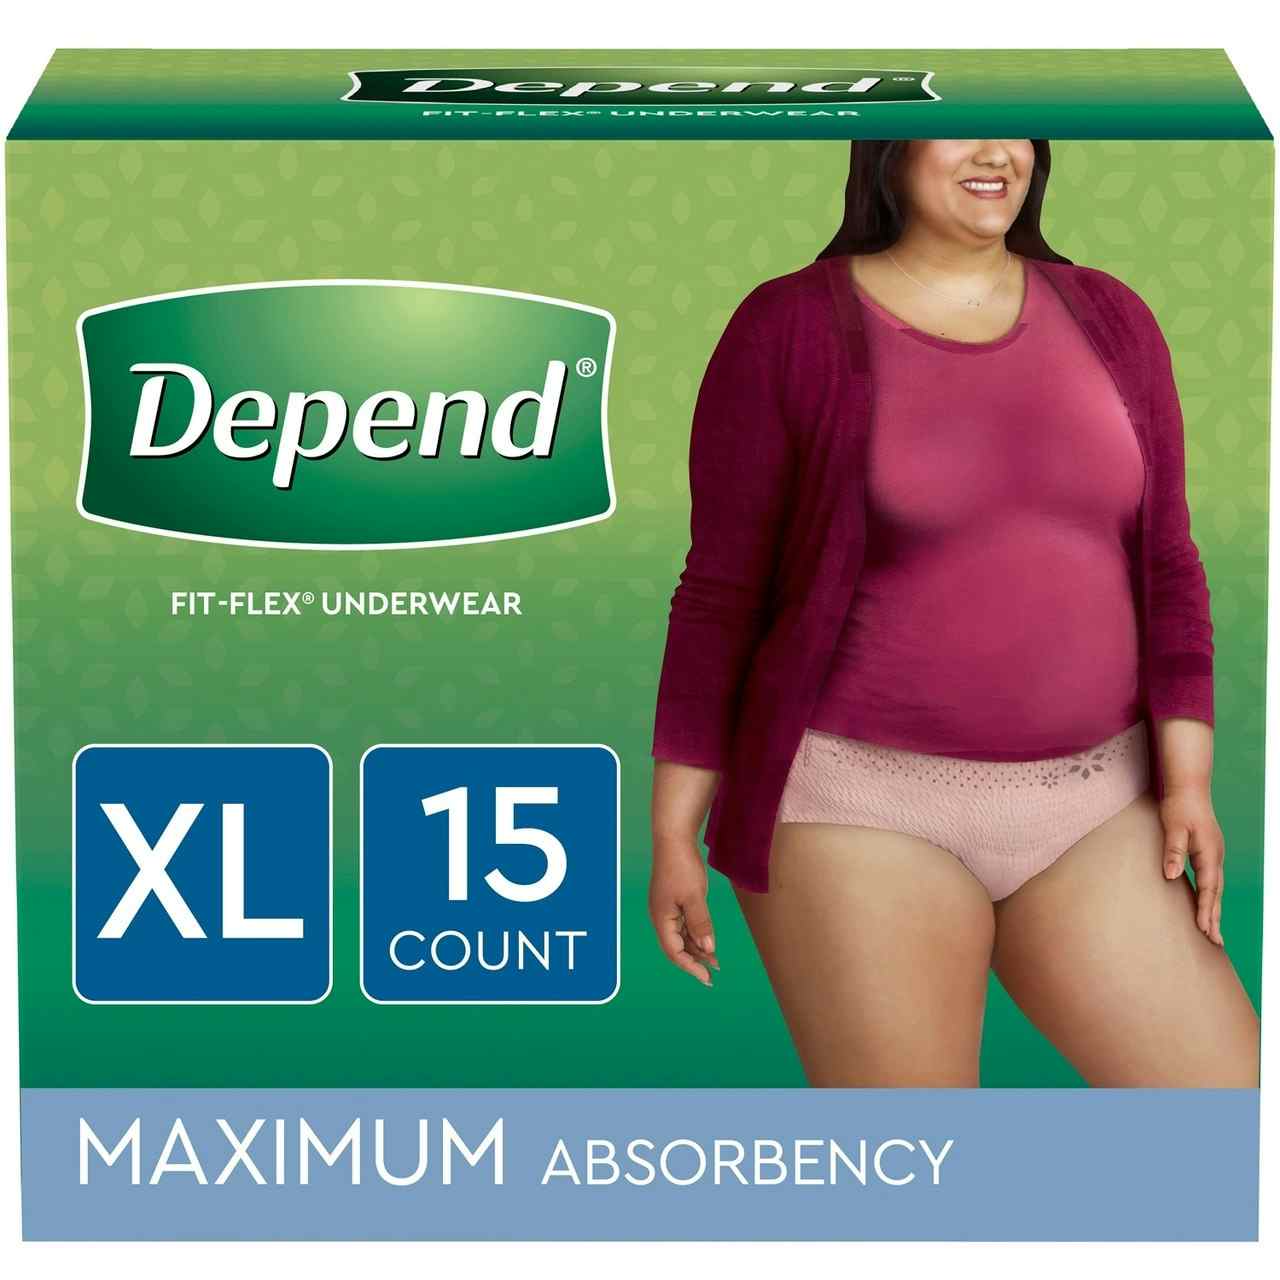 Depend fit flex underwear